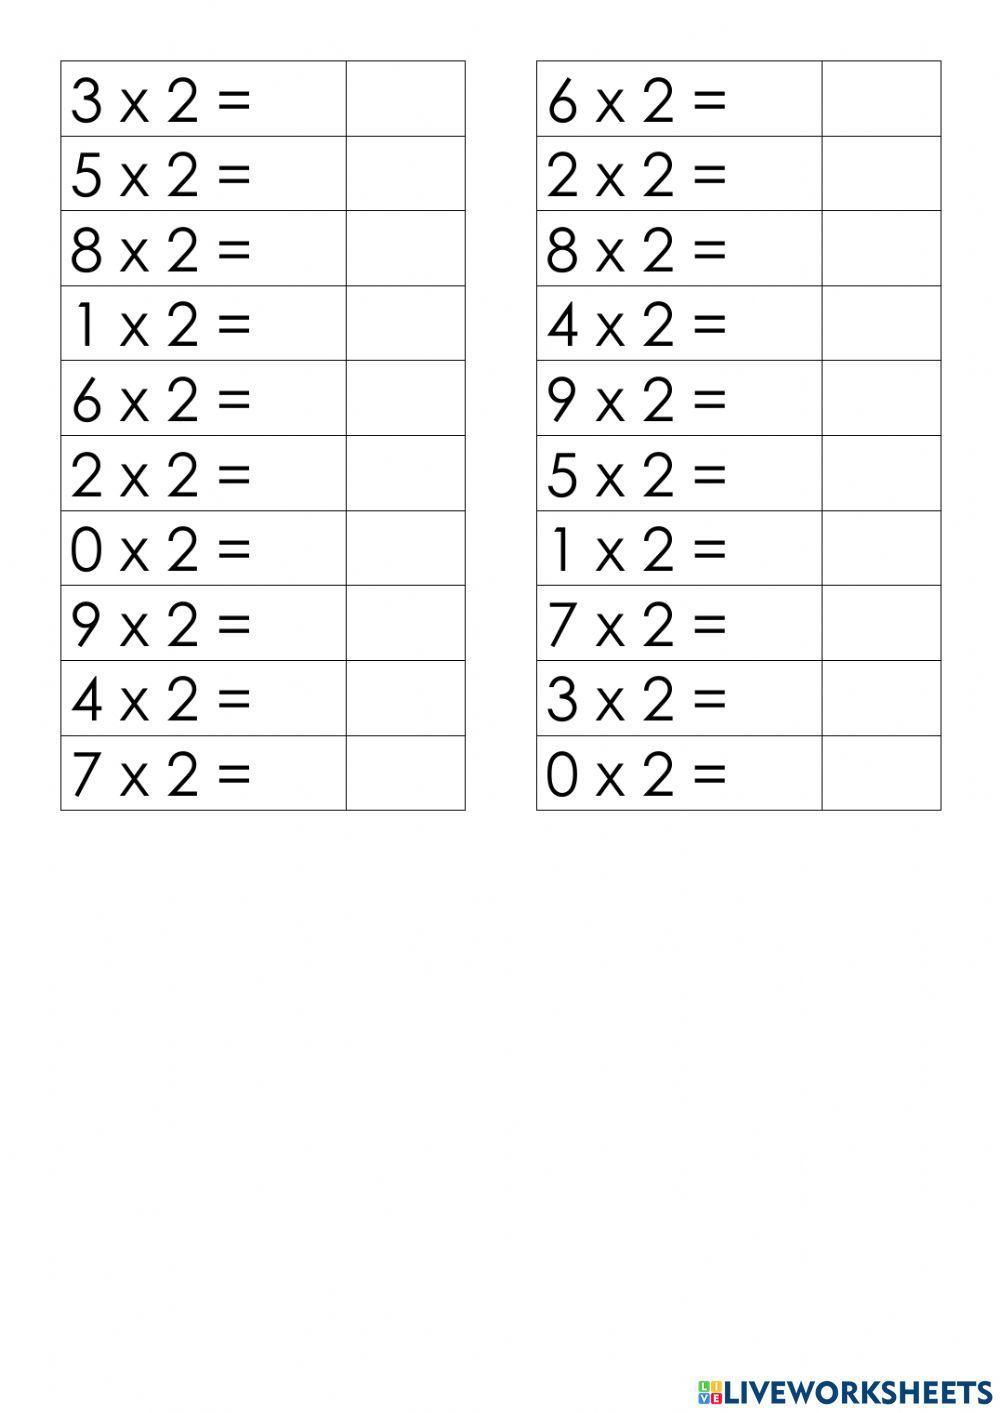 Таблица умножения на 2